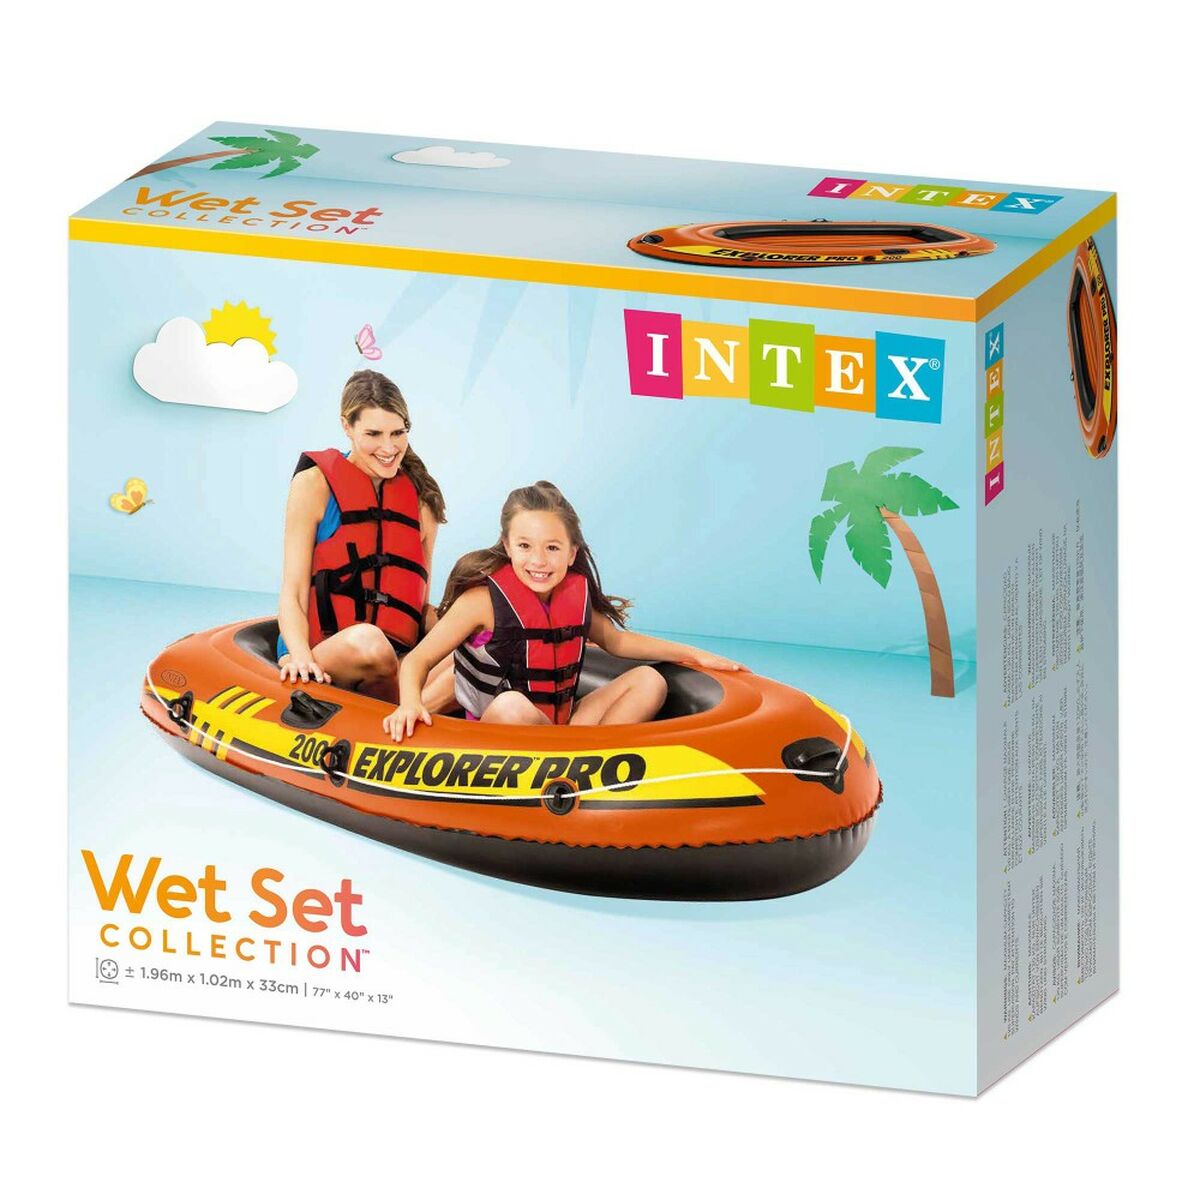 Inflatable Boat Intex Explorer Pro 200 196 x 33 x 102 cm